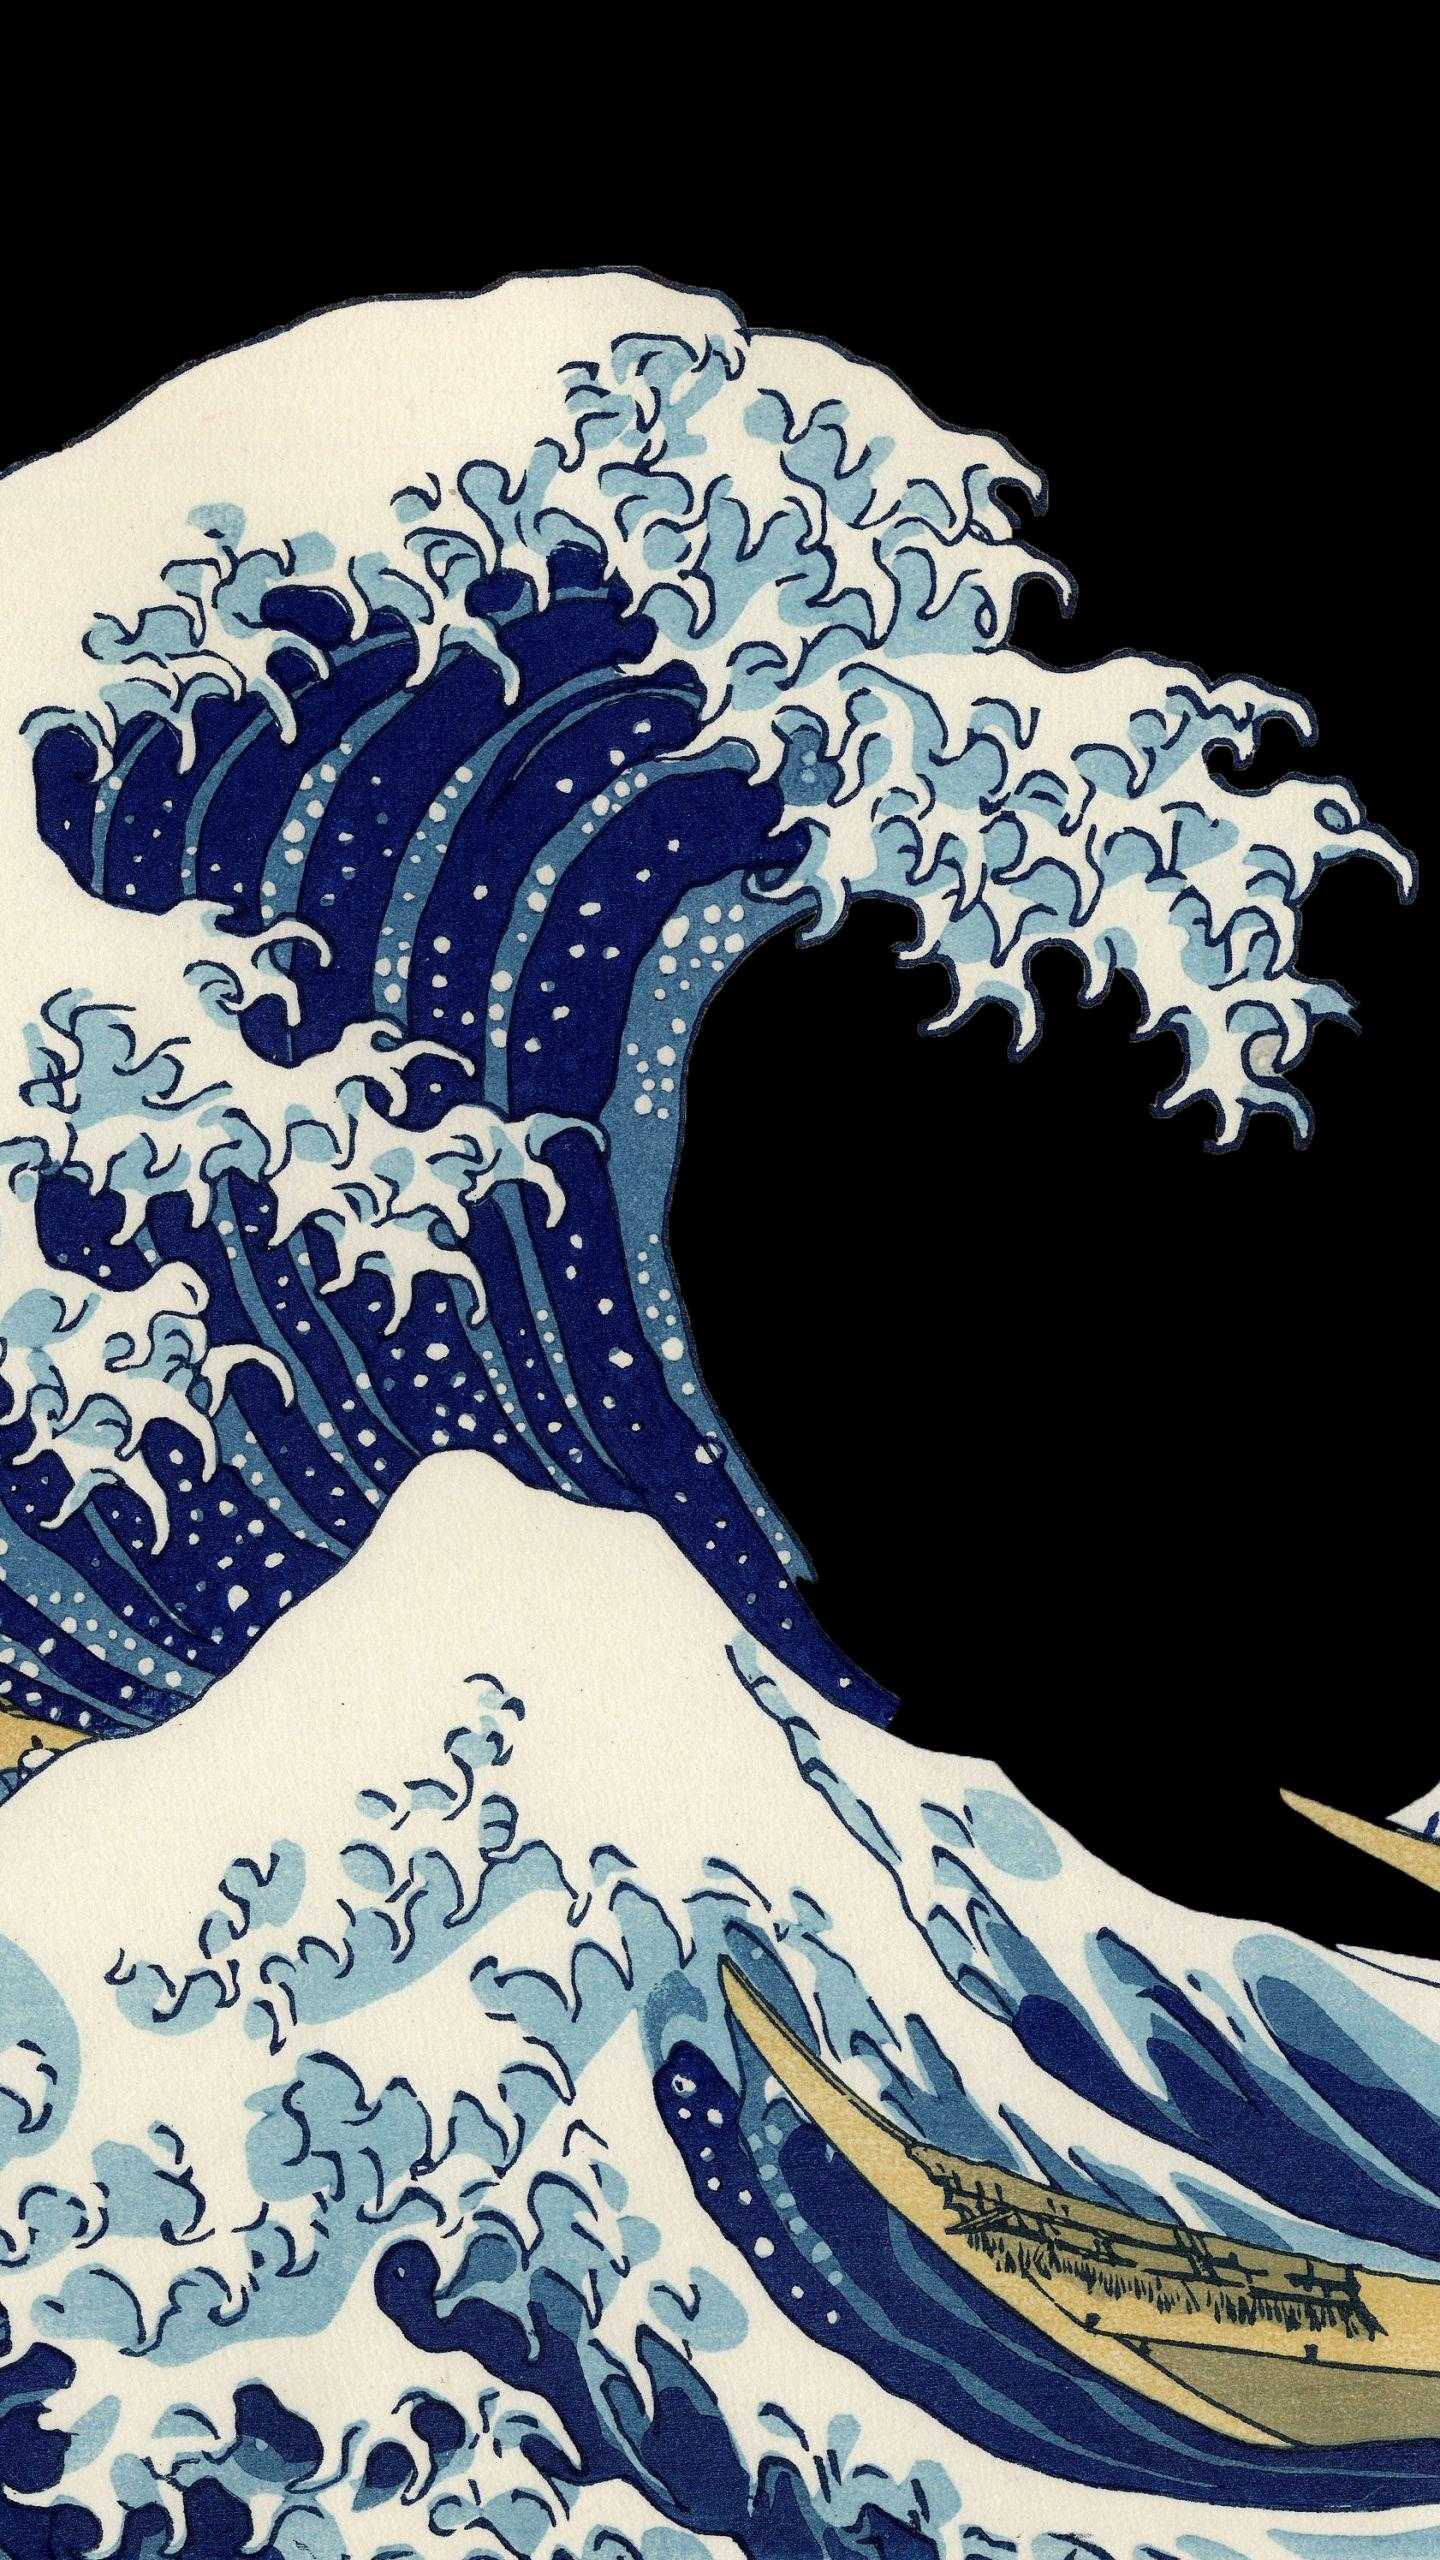 За «большой волной»: выставка работ хокусая в британском музее | nippon.com